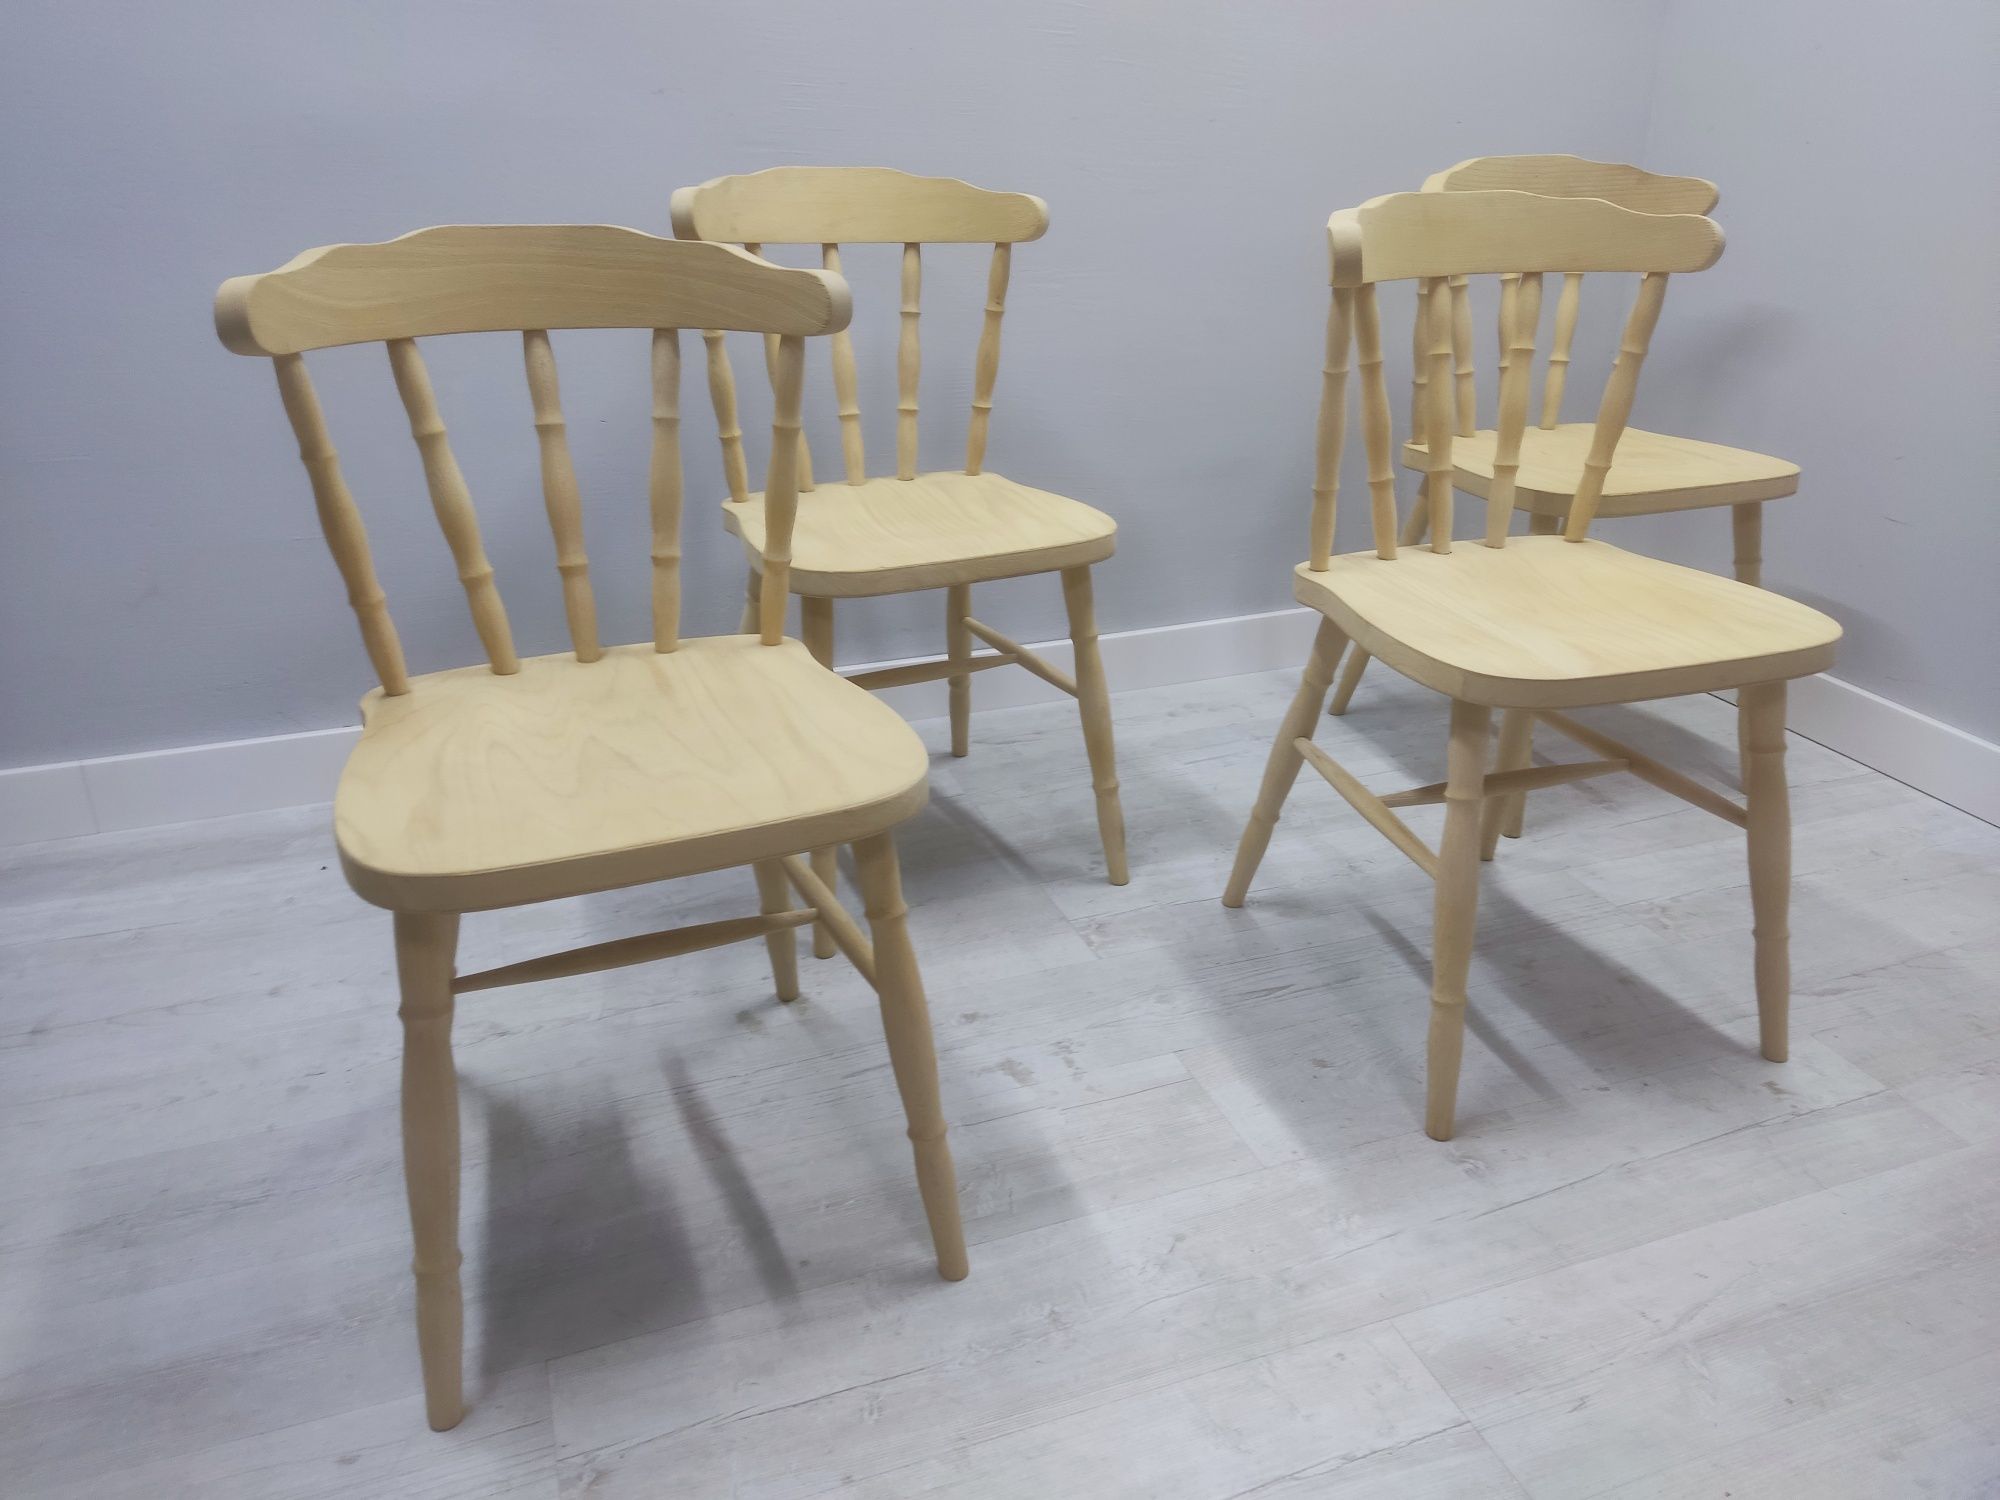 Krzesła gięte drewniane patyczak szlifowane do lakierowania 70szt